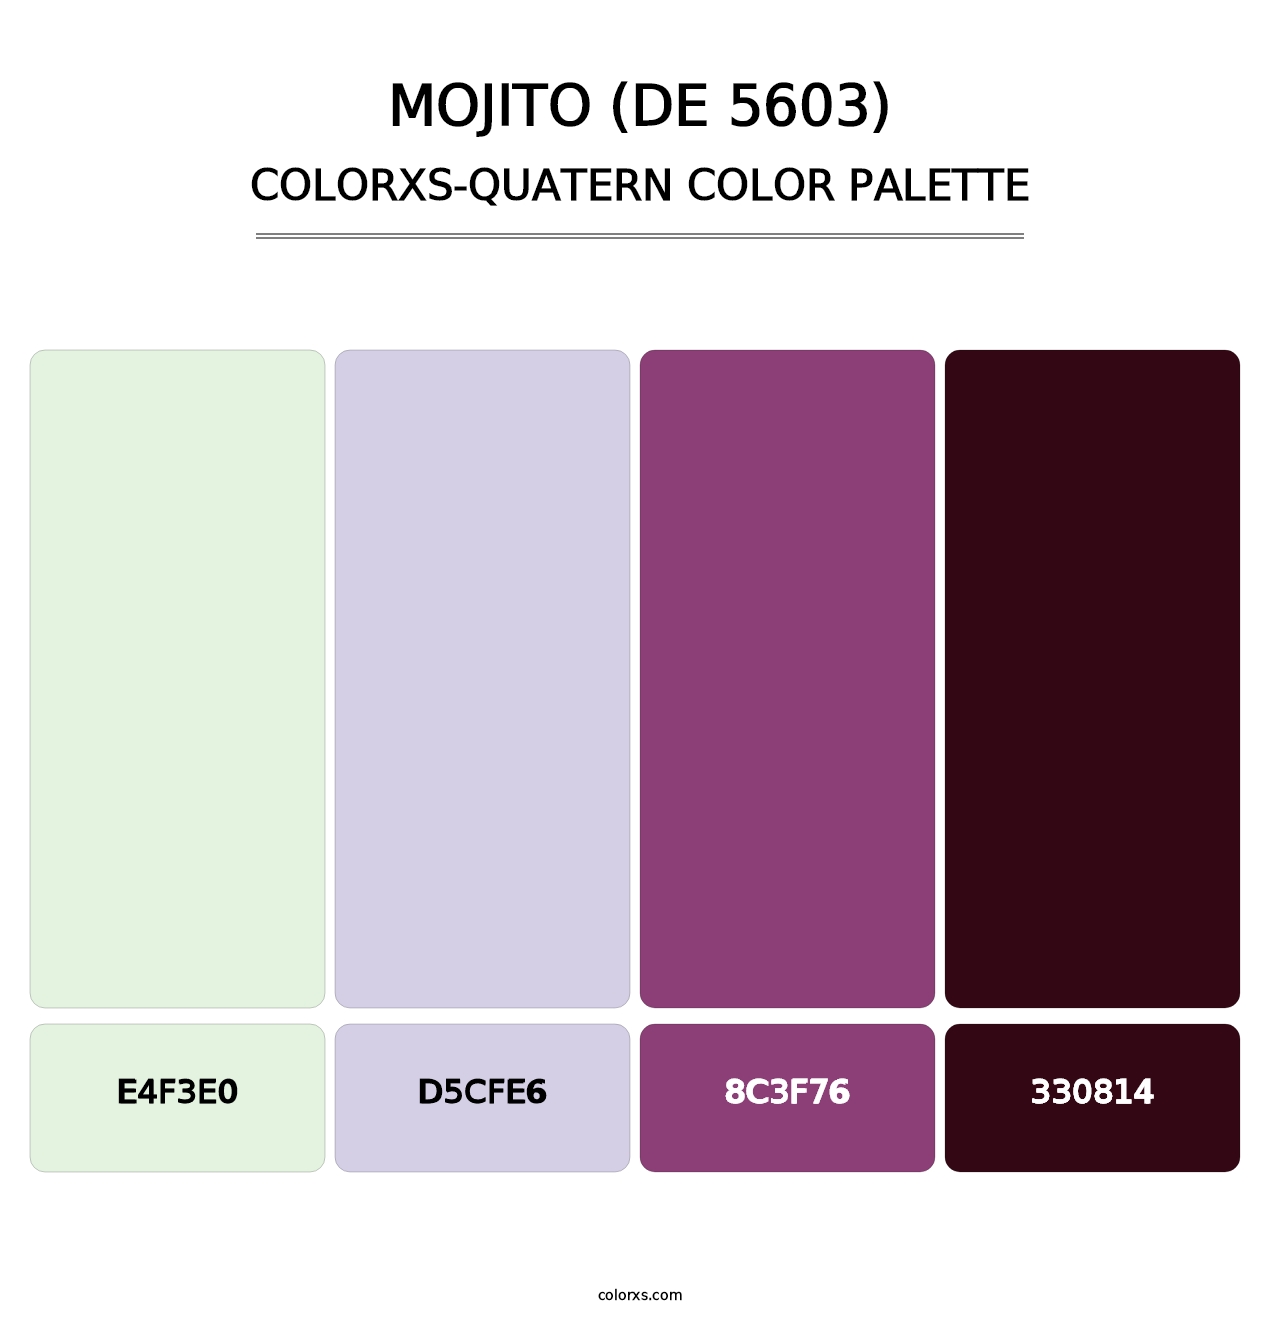 Mojito (DE 5603) - Colorxs Quatern Palette